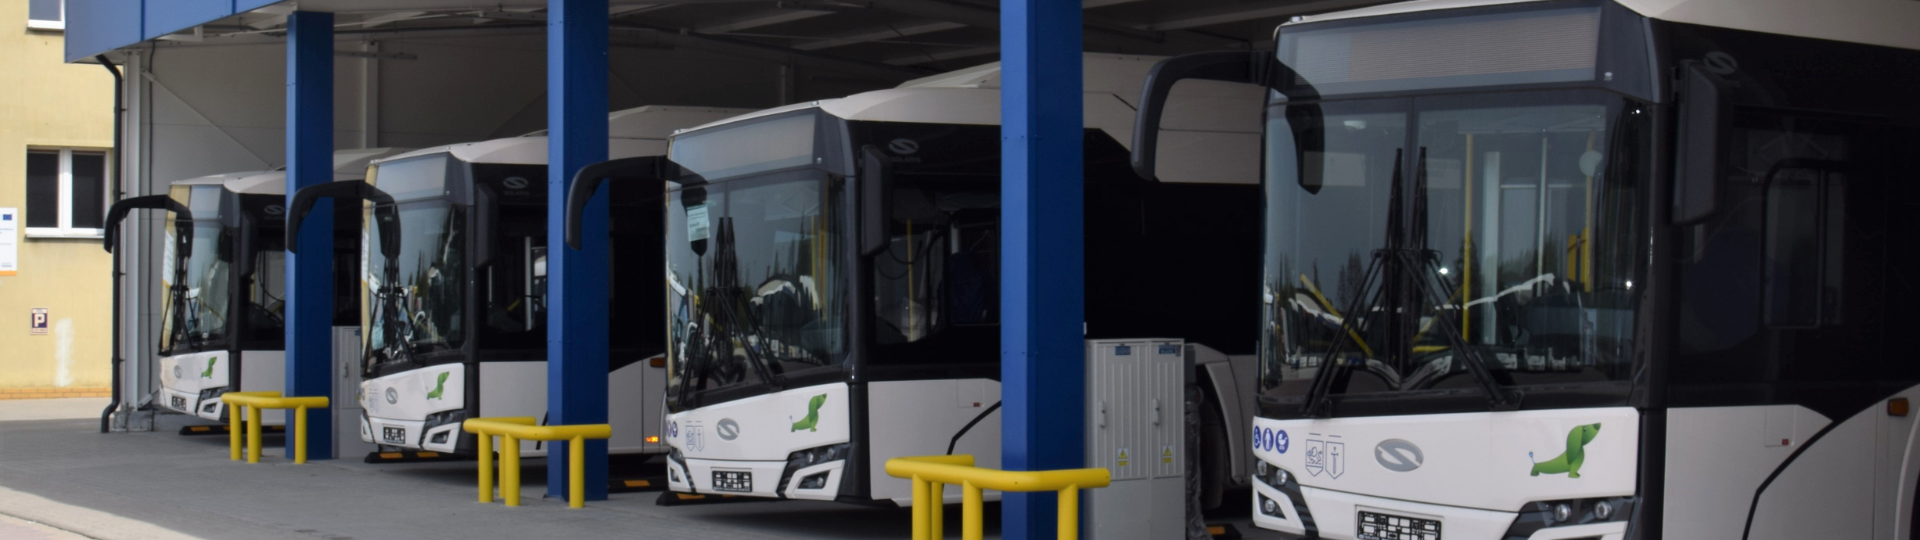 W Zduńskiej Woli kursują już pierwsze autobusy elektryczne